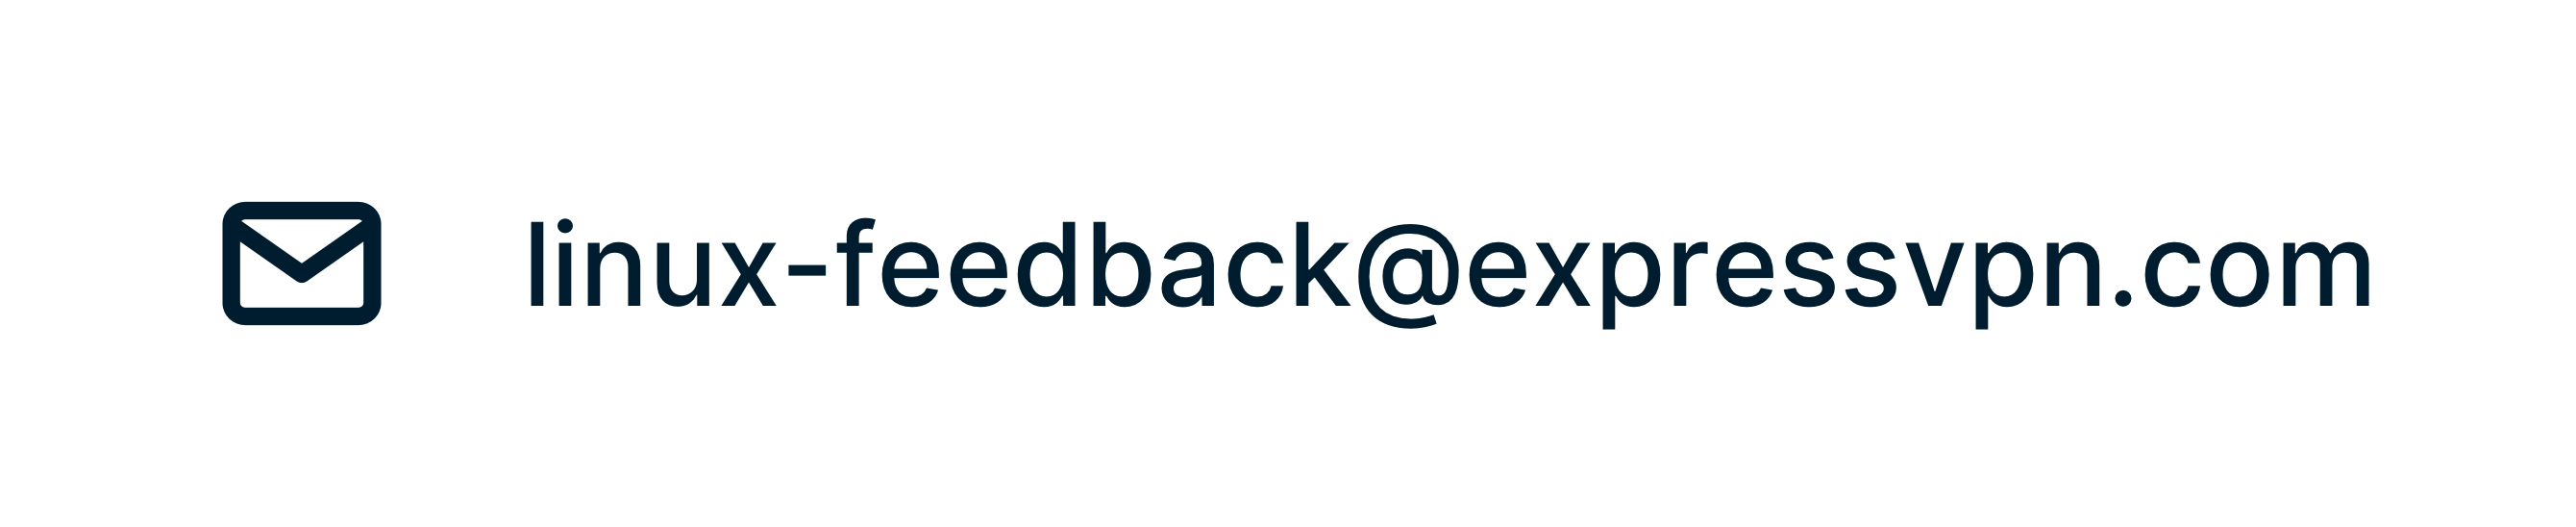 Send feedback on ExpressVPN beta for Linux.